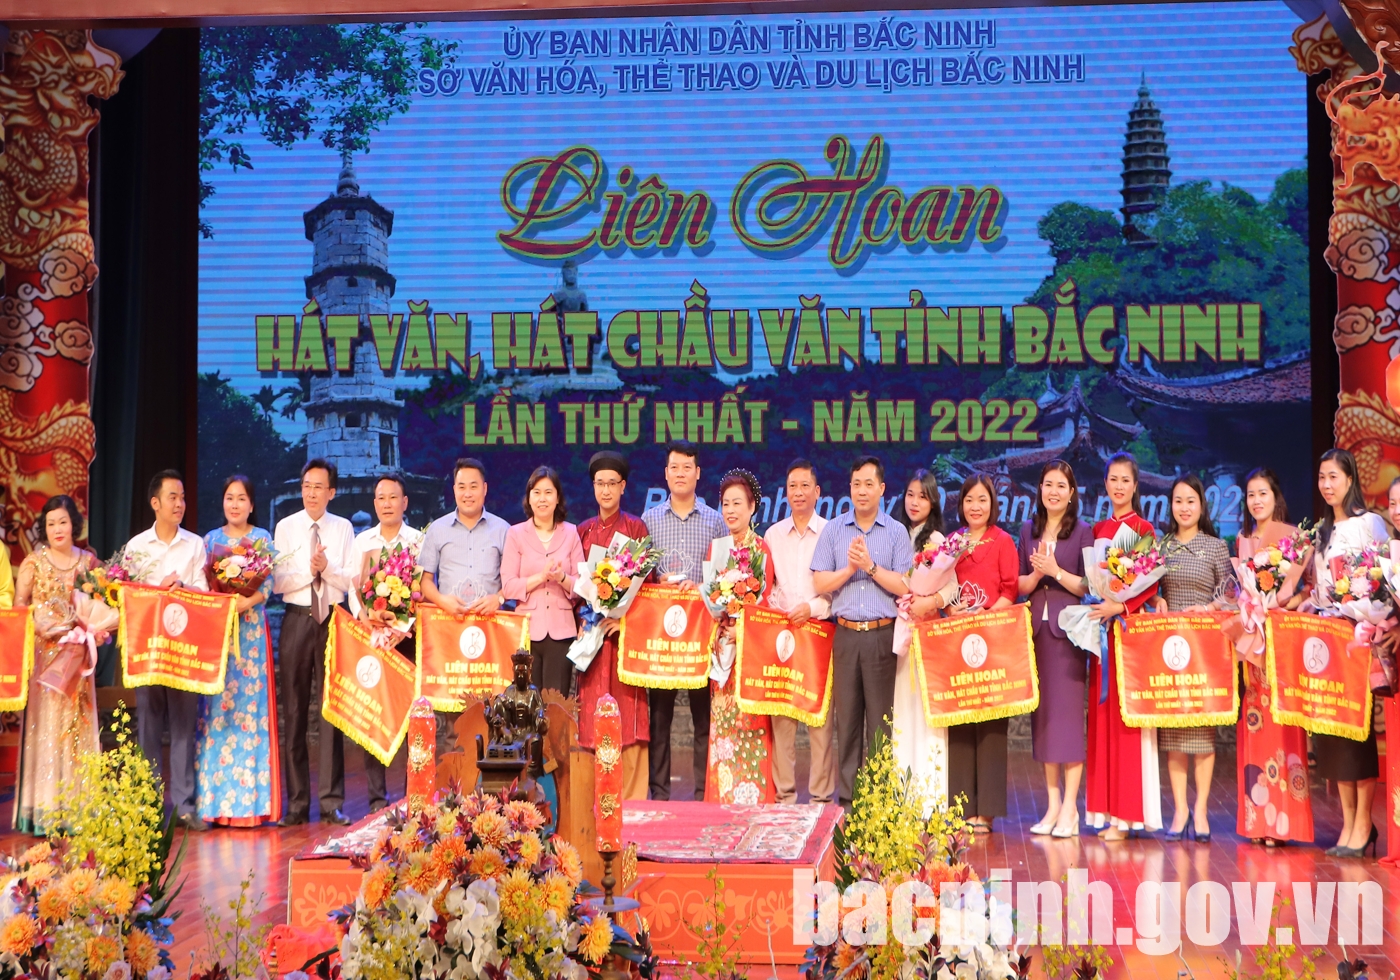 Liên hoan hát Văn, hát Chầu văn tỉnh Bắc Ninh lần thứ Nhất - năm 2022